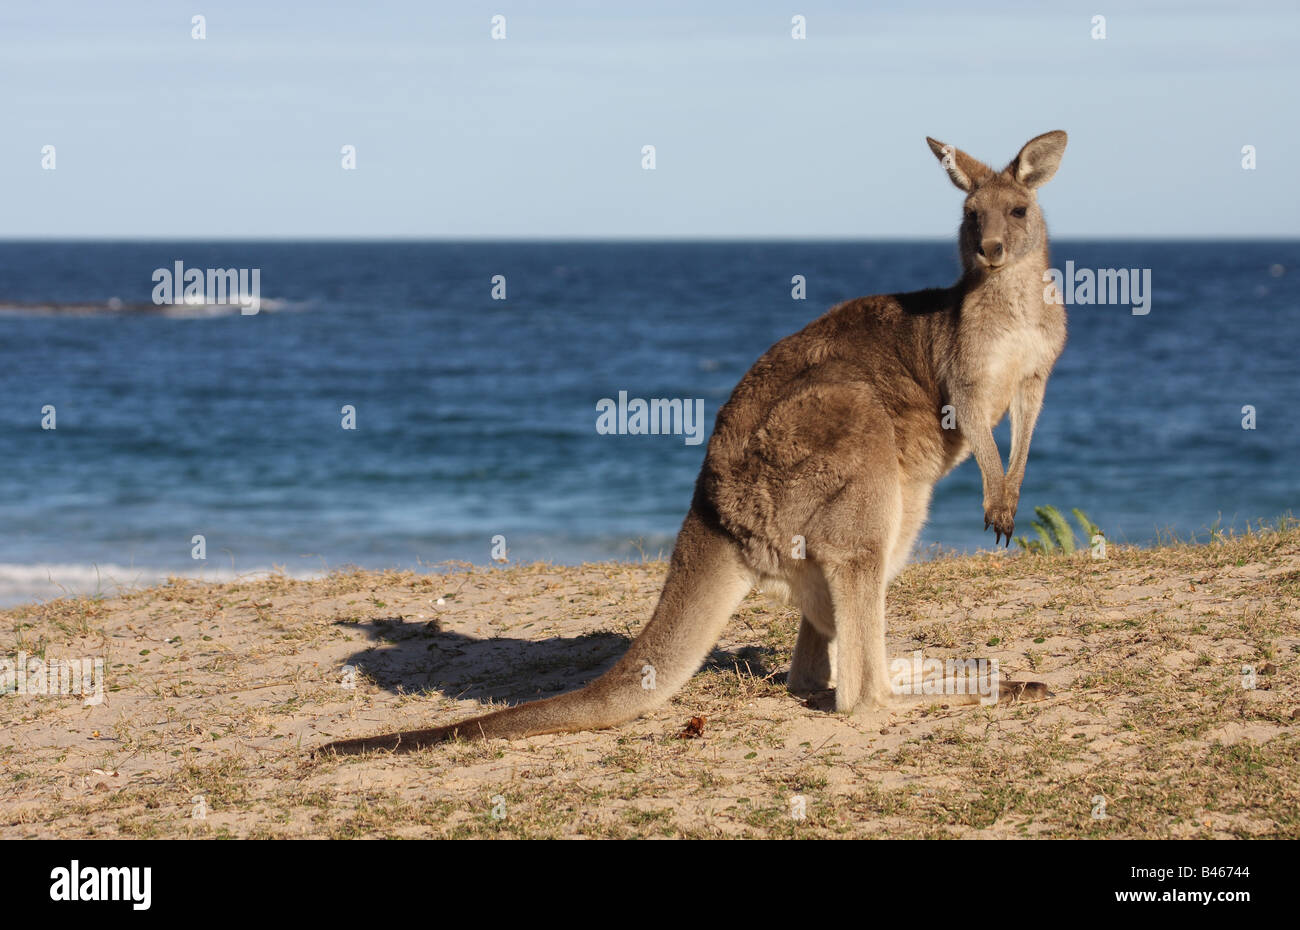 kangaroo on beach Stock Photo